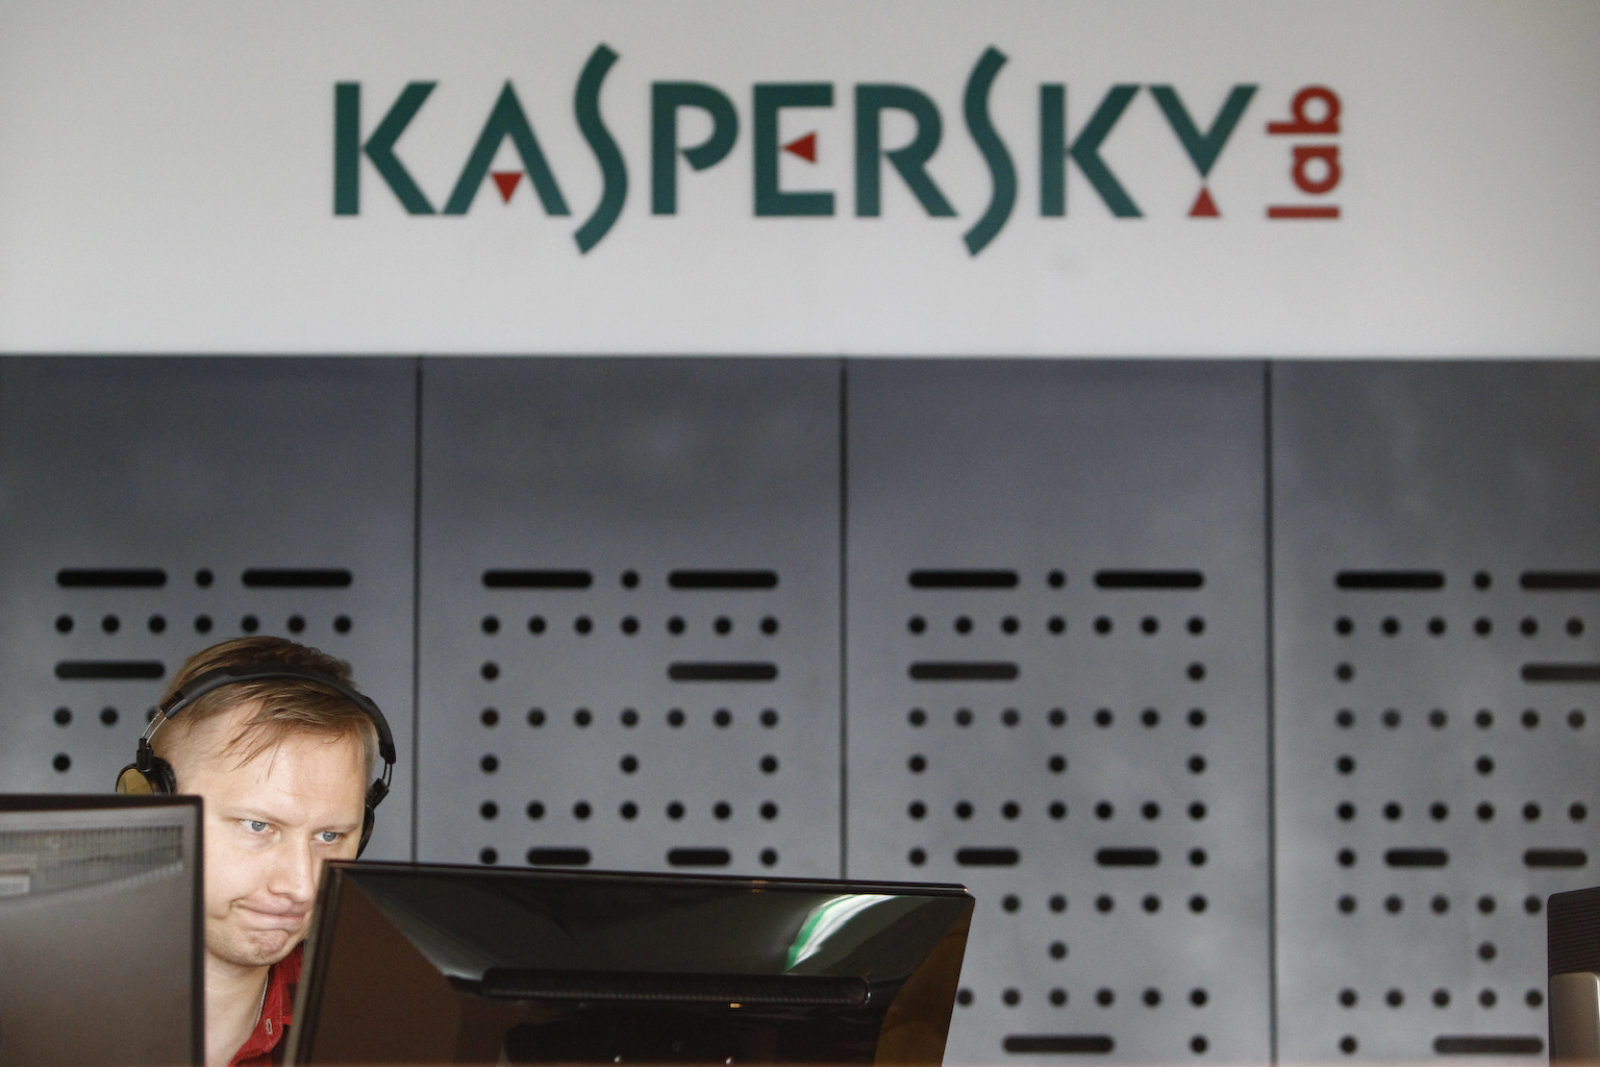 Kaspersky filed a lawsuit